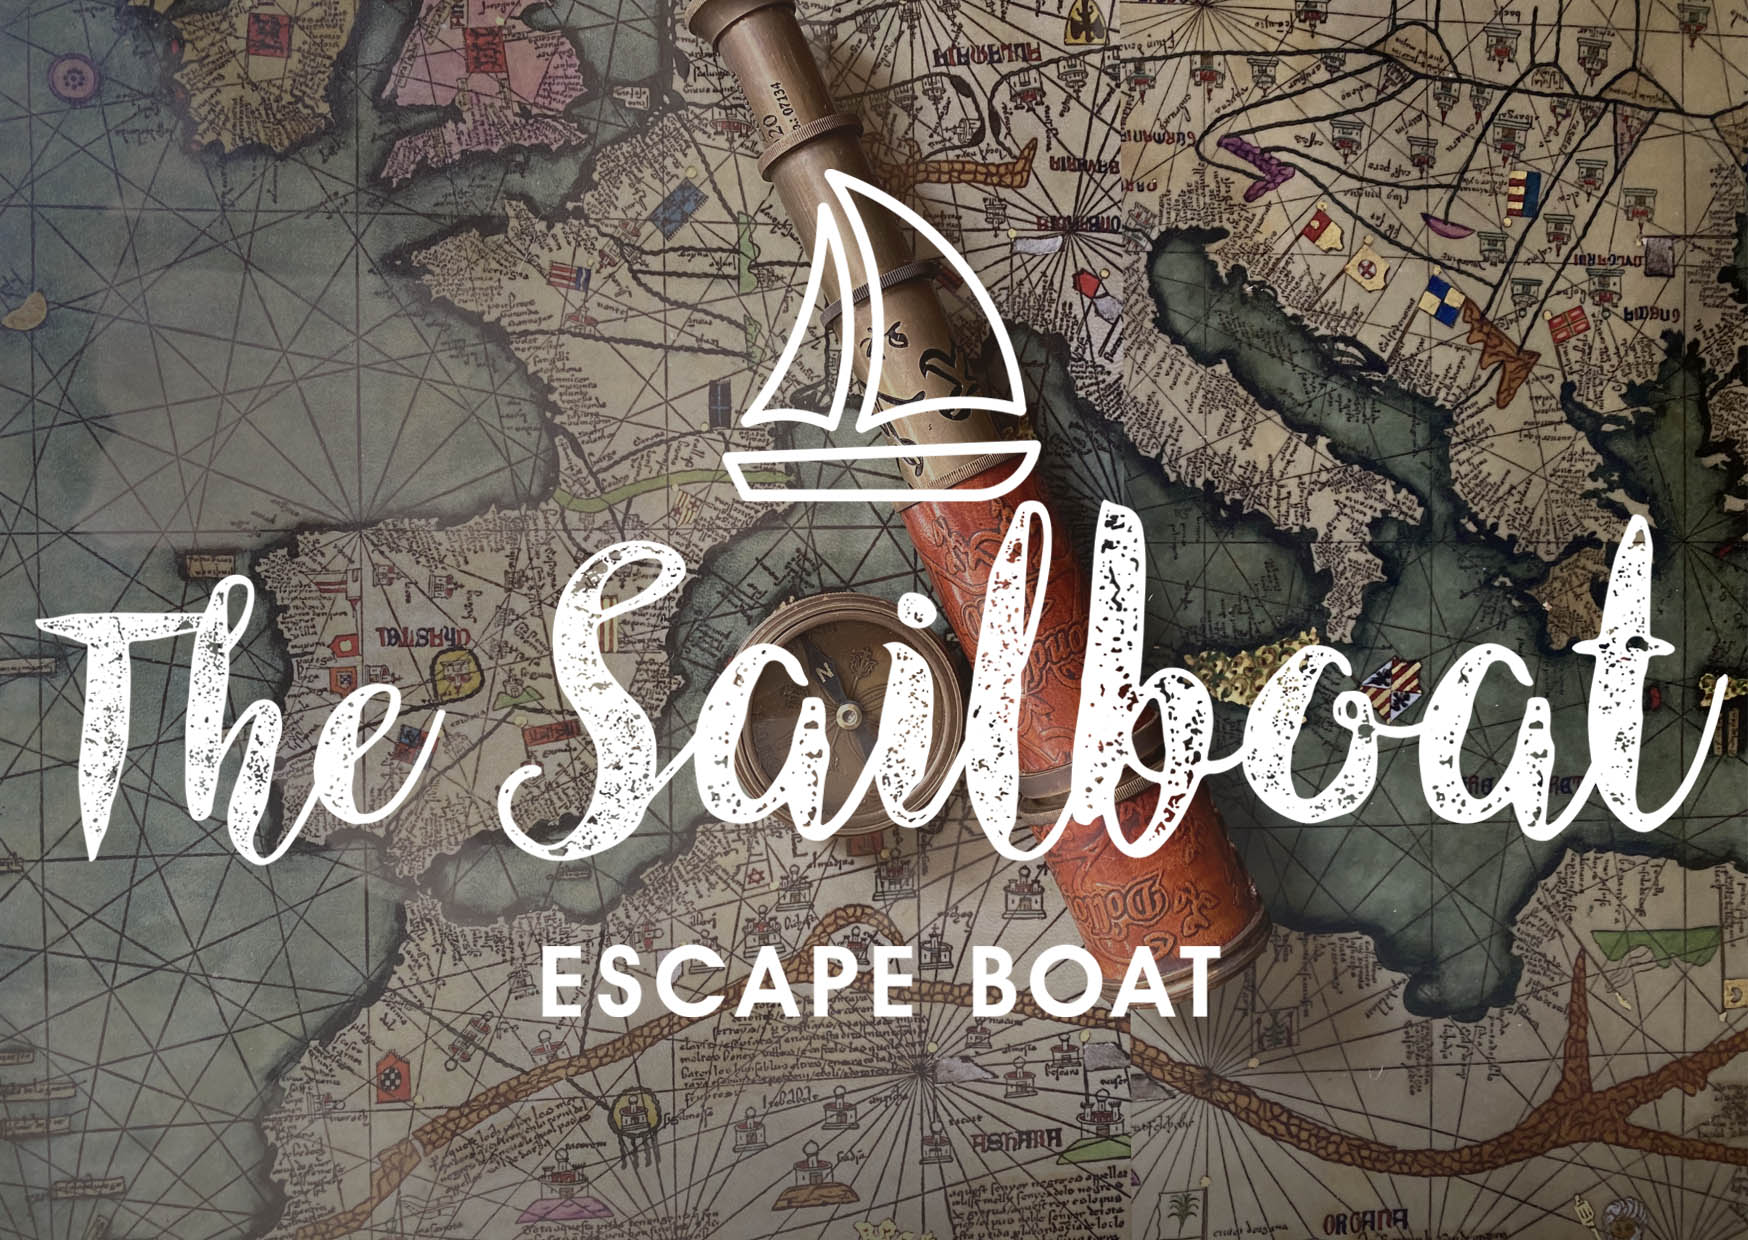 The Sailboat